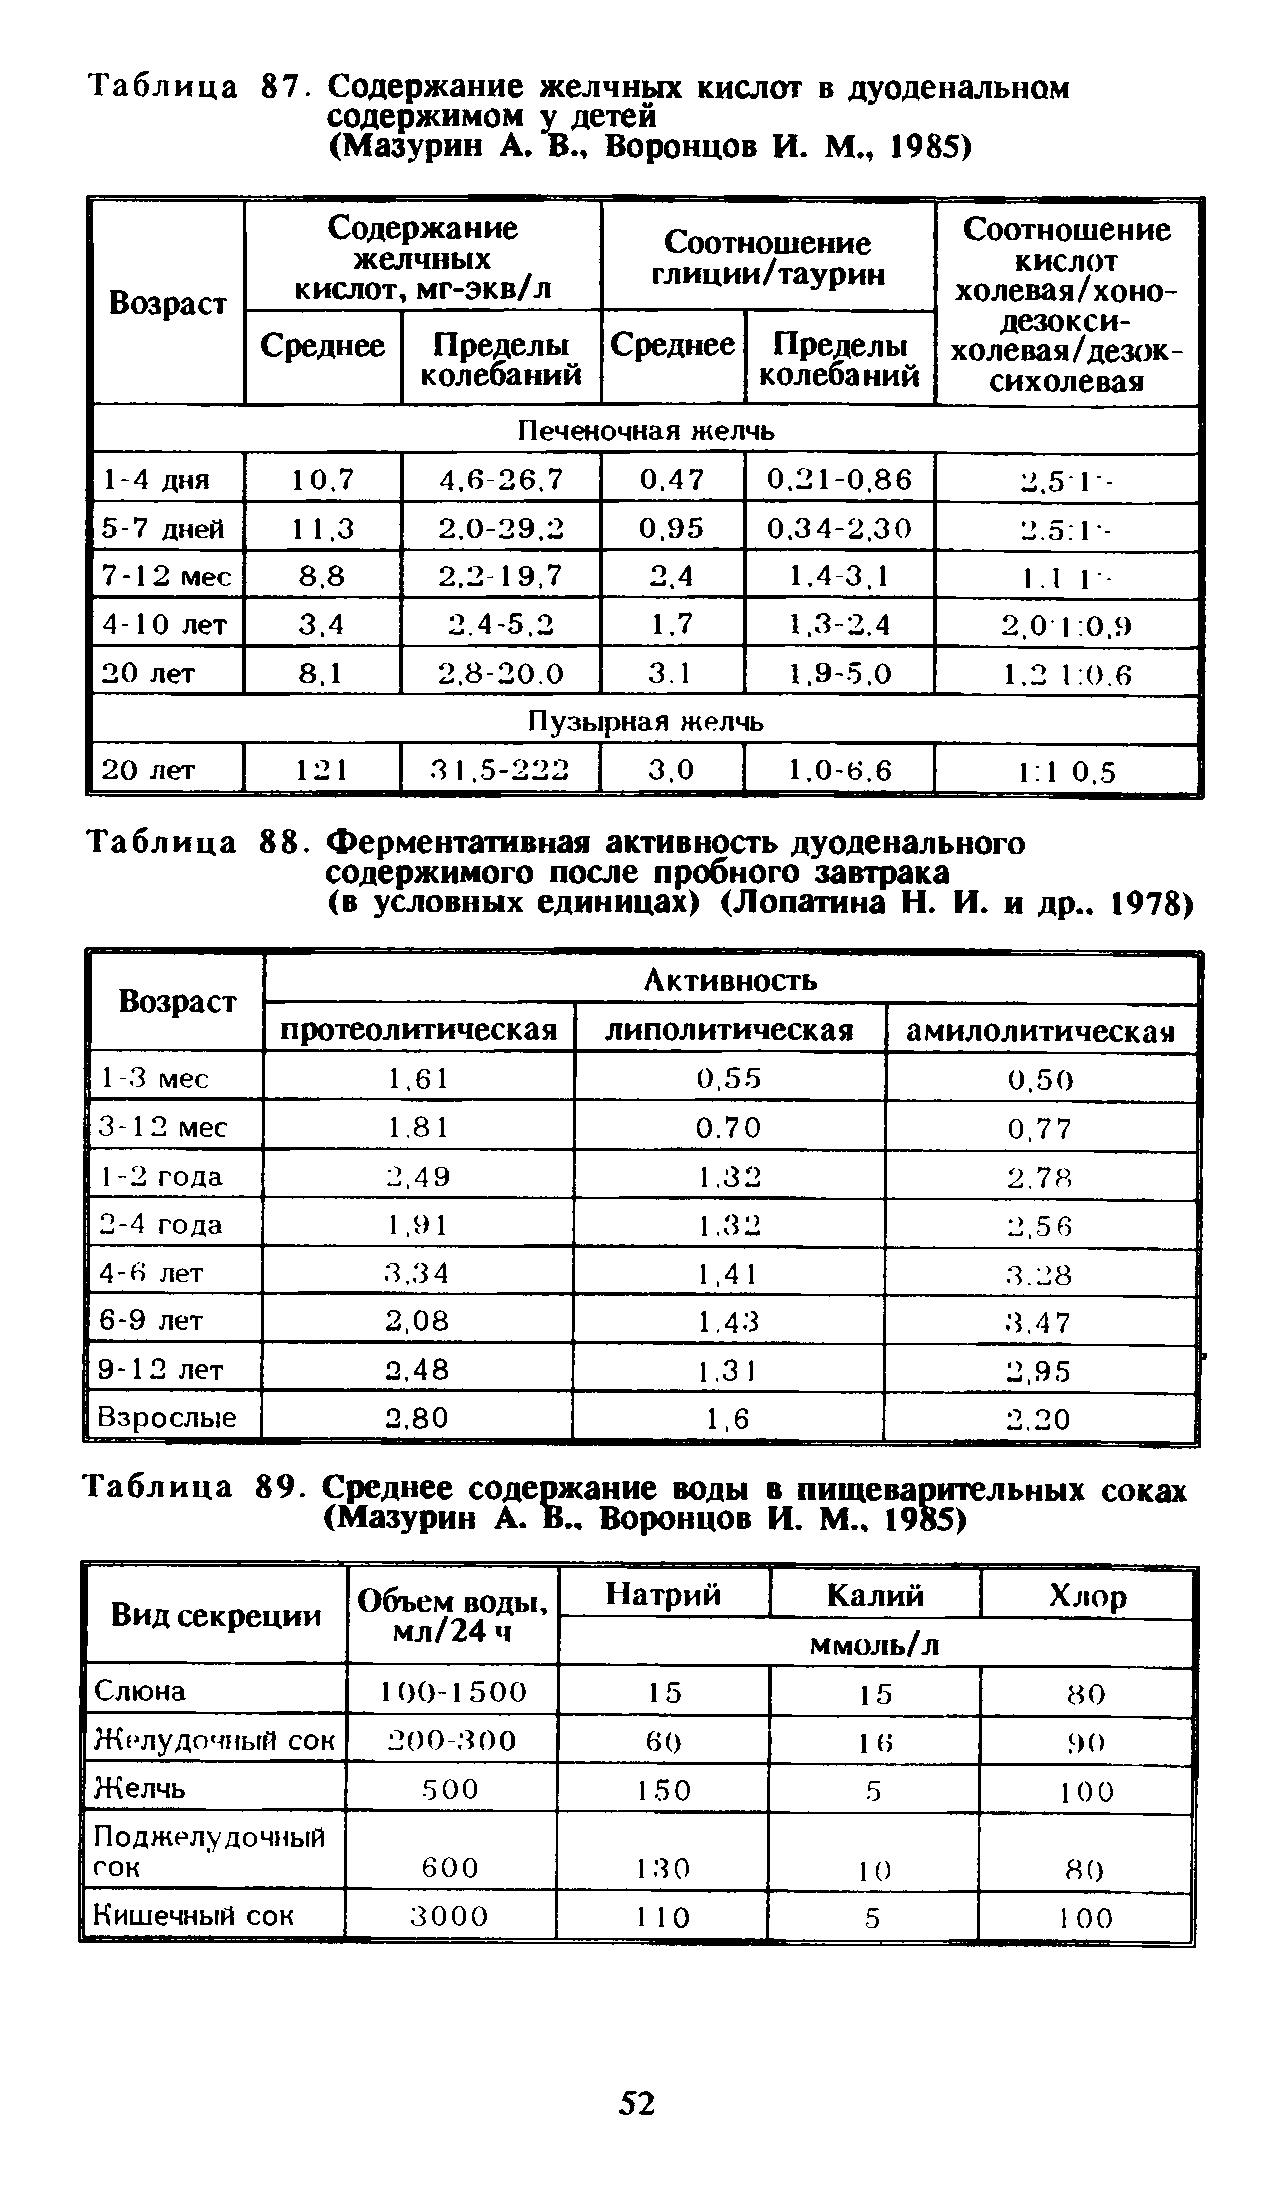 Таблица 88. Ферментативная активность дуоденального содержимого после пробного завтрака (в условных единицах) (Лопатина Н. И. и др.. 1978)...